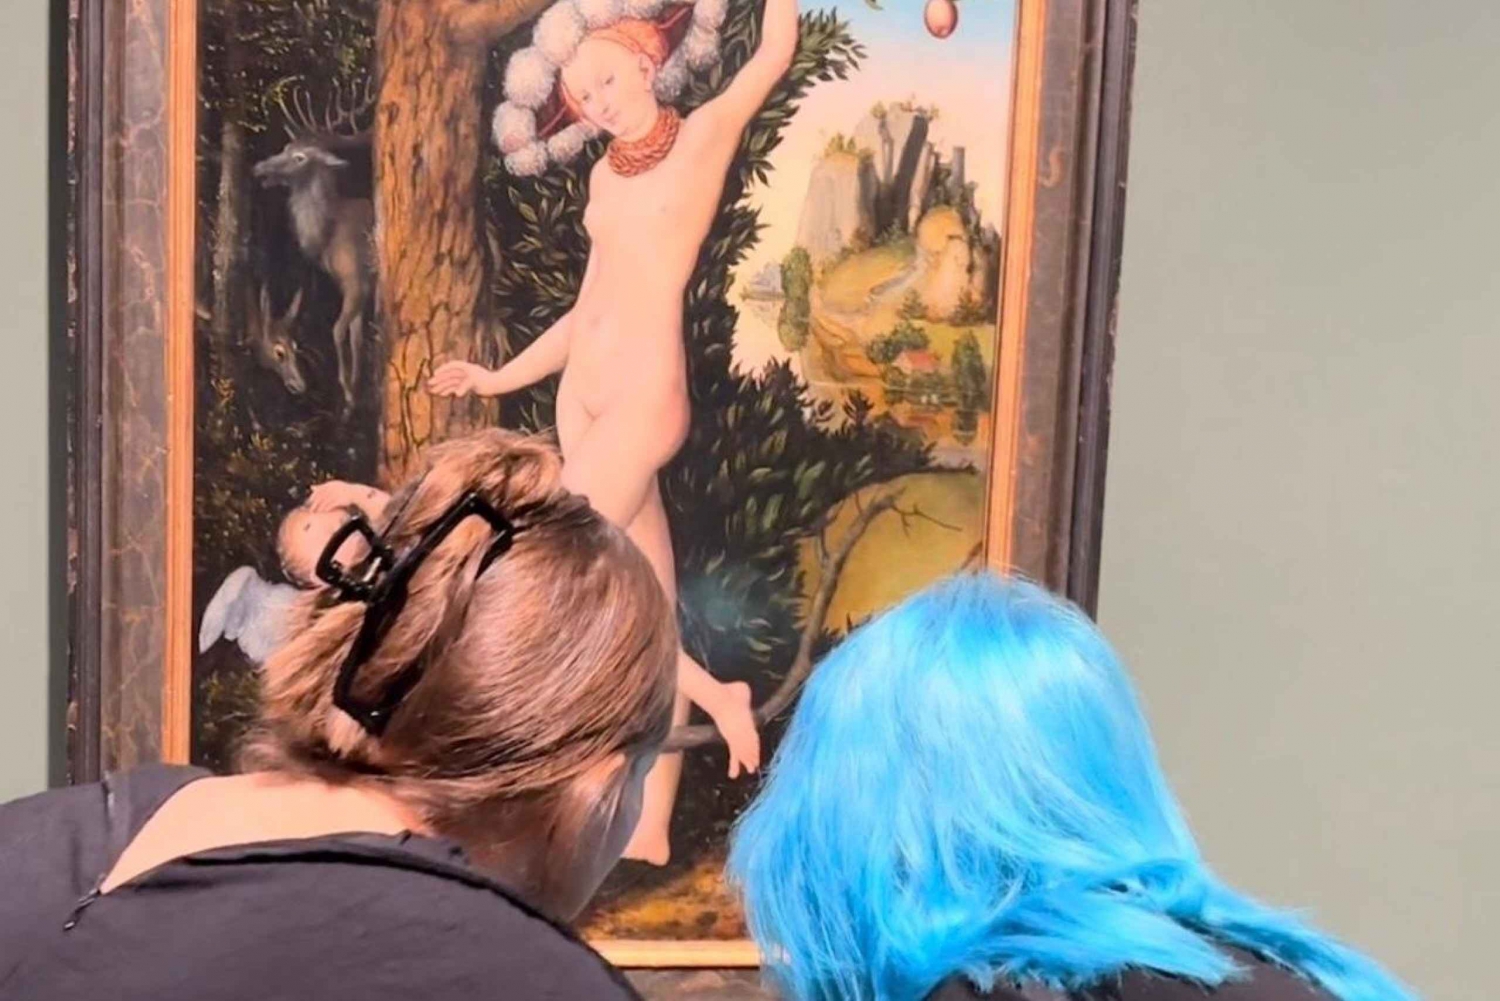 Women in art - National Gallery